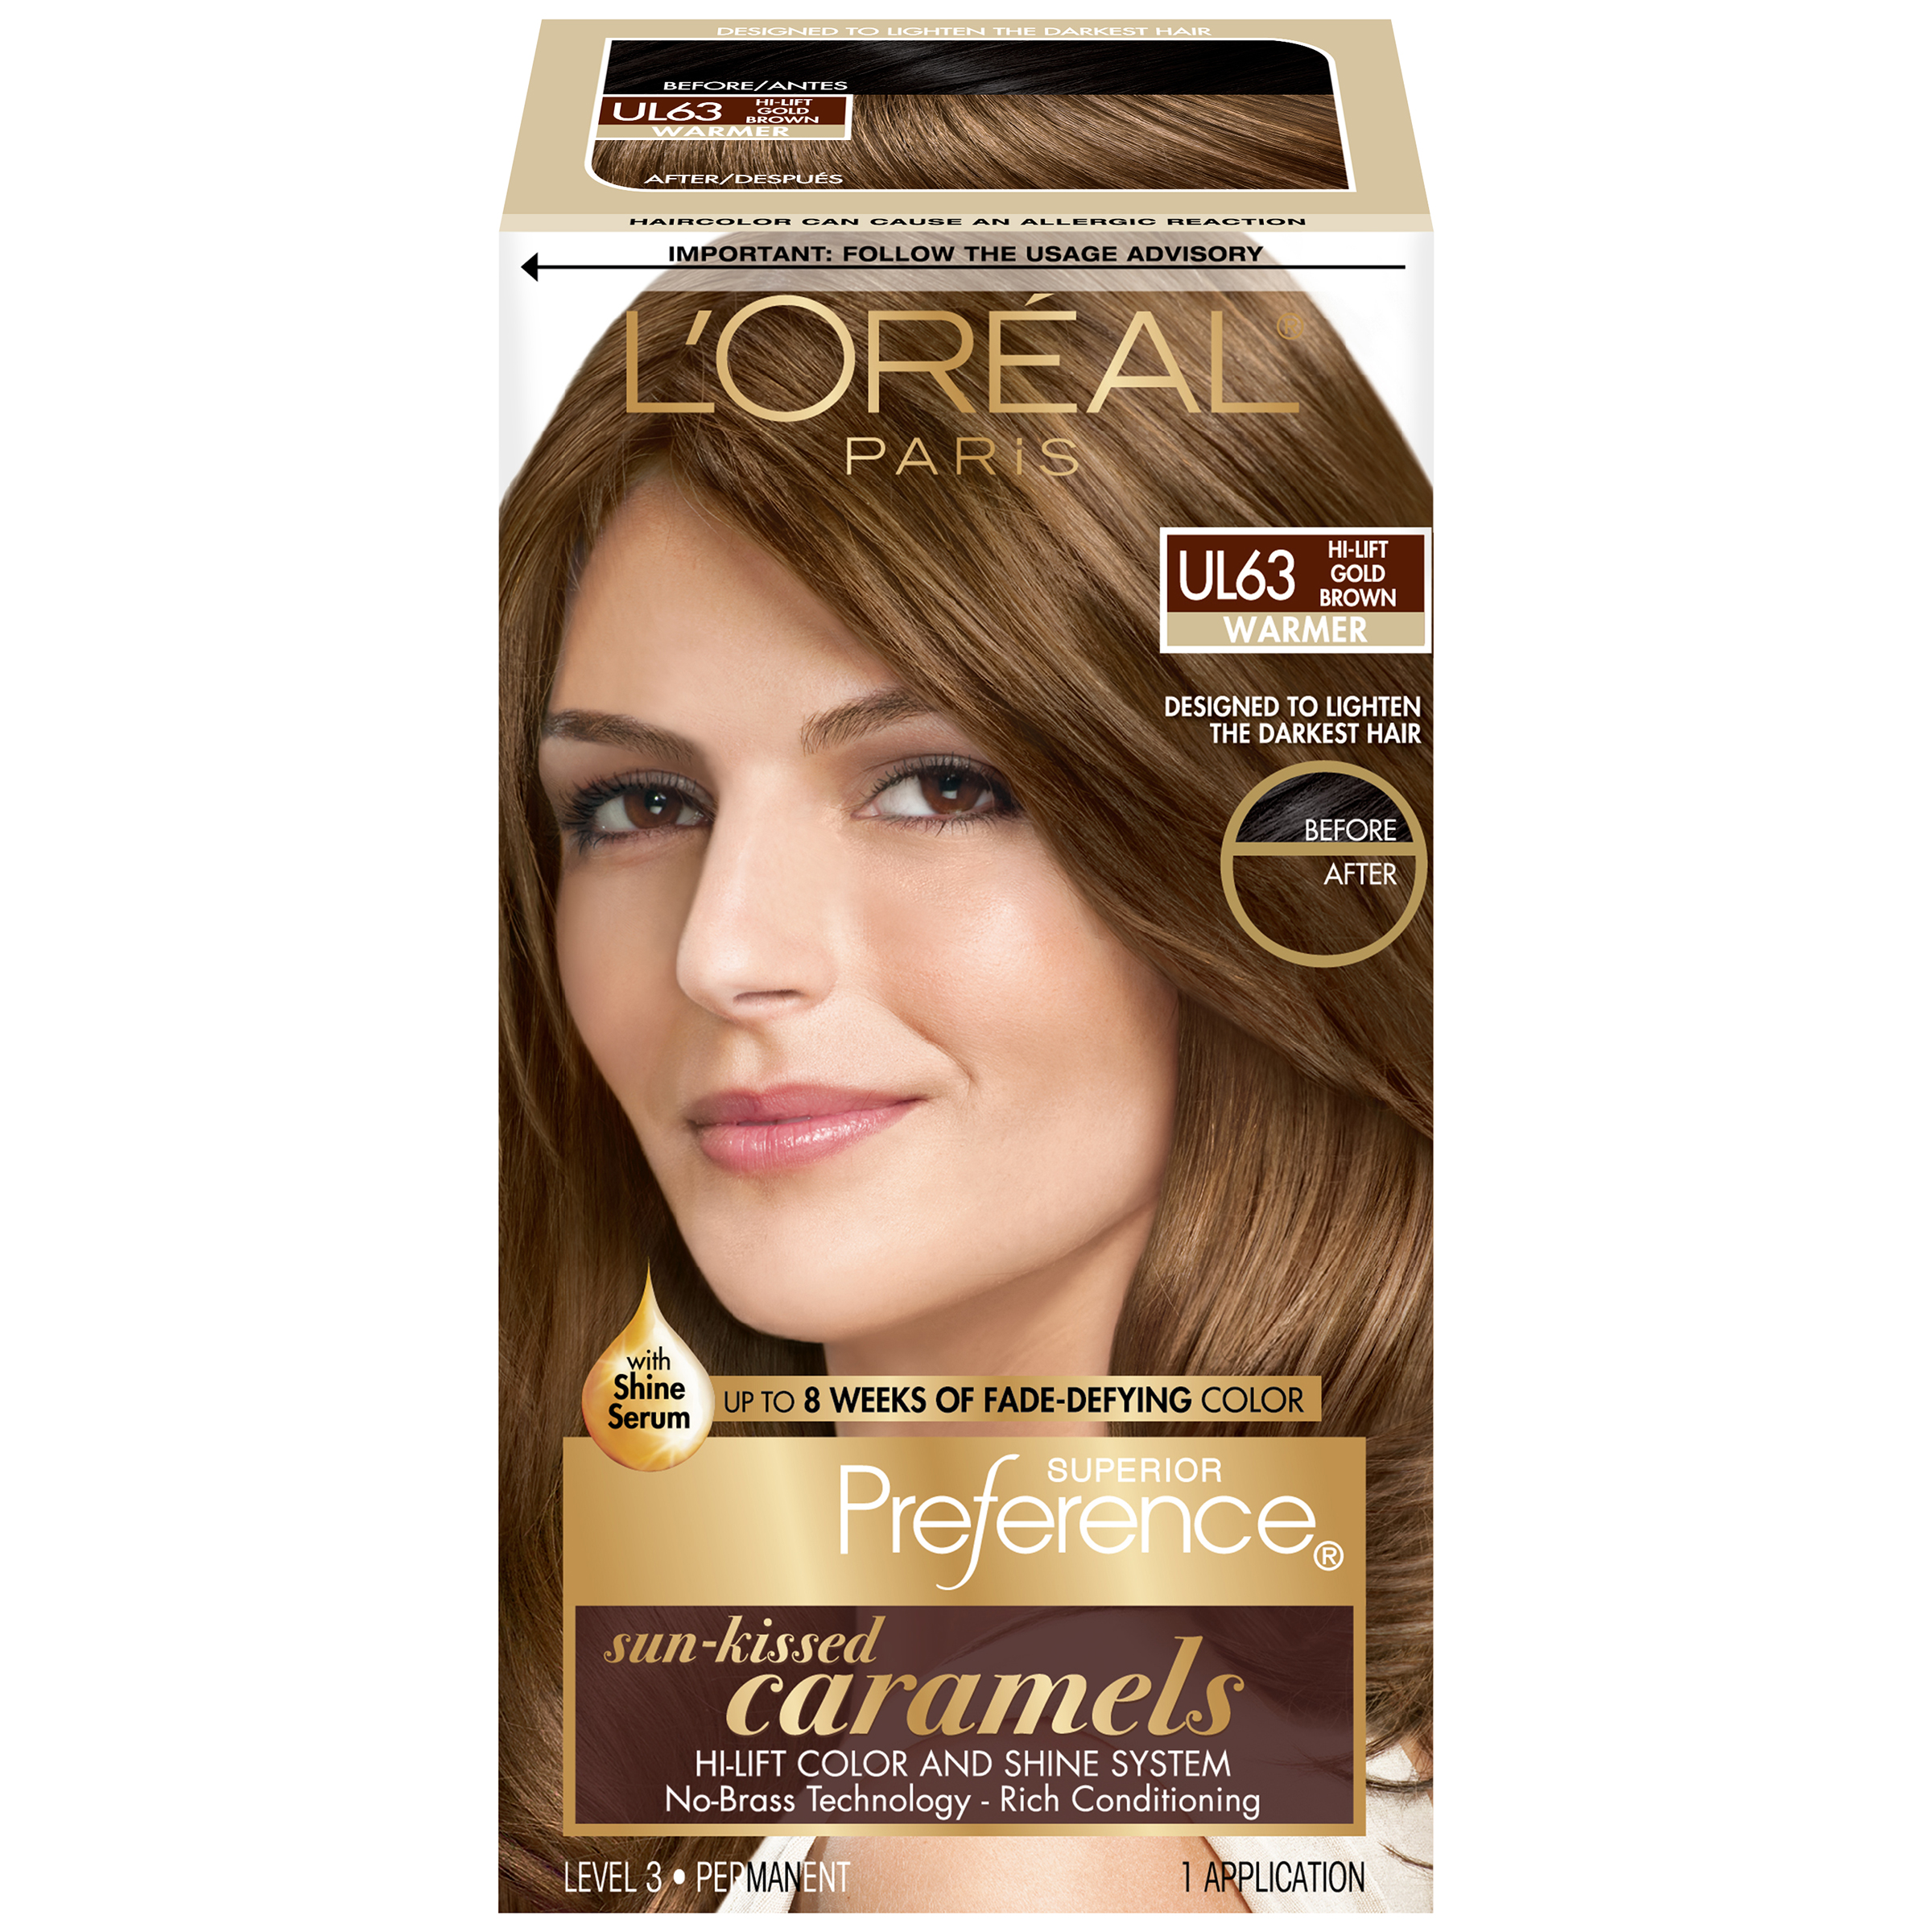 LOreal UL63 Warmer Hi Lift Gold Brown Hair Color BOX Beauty